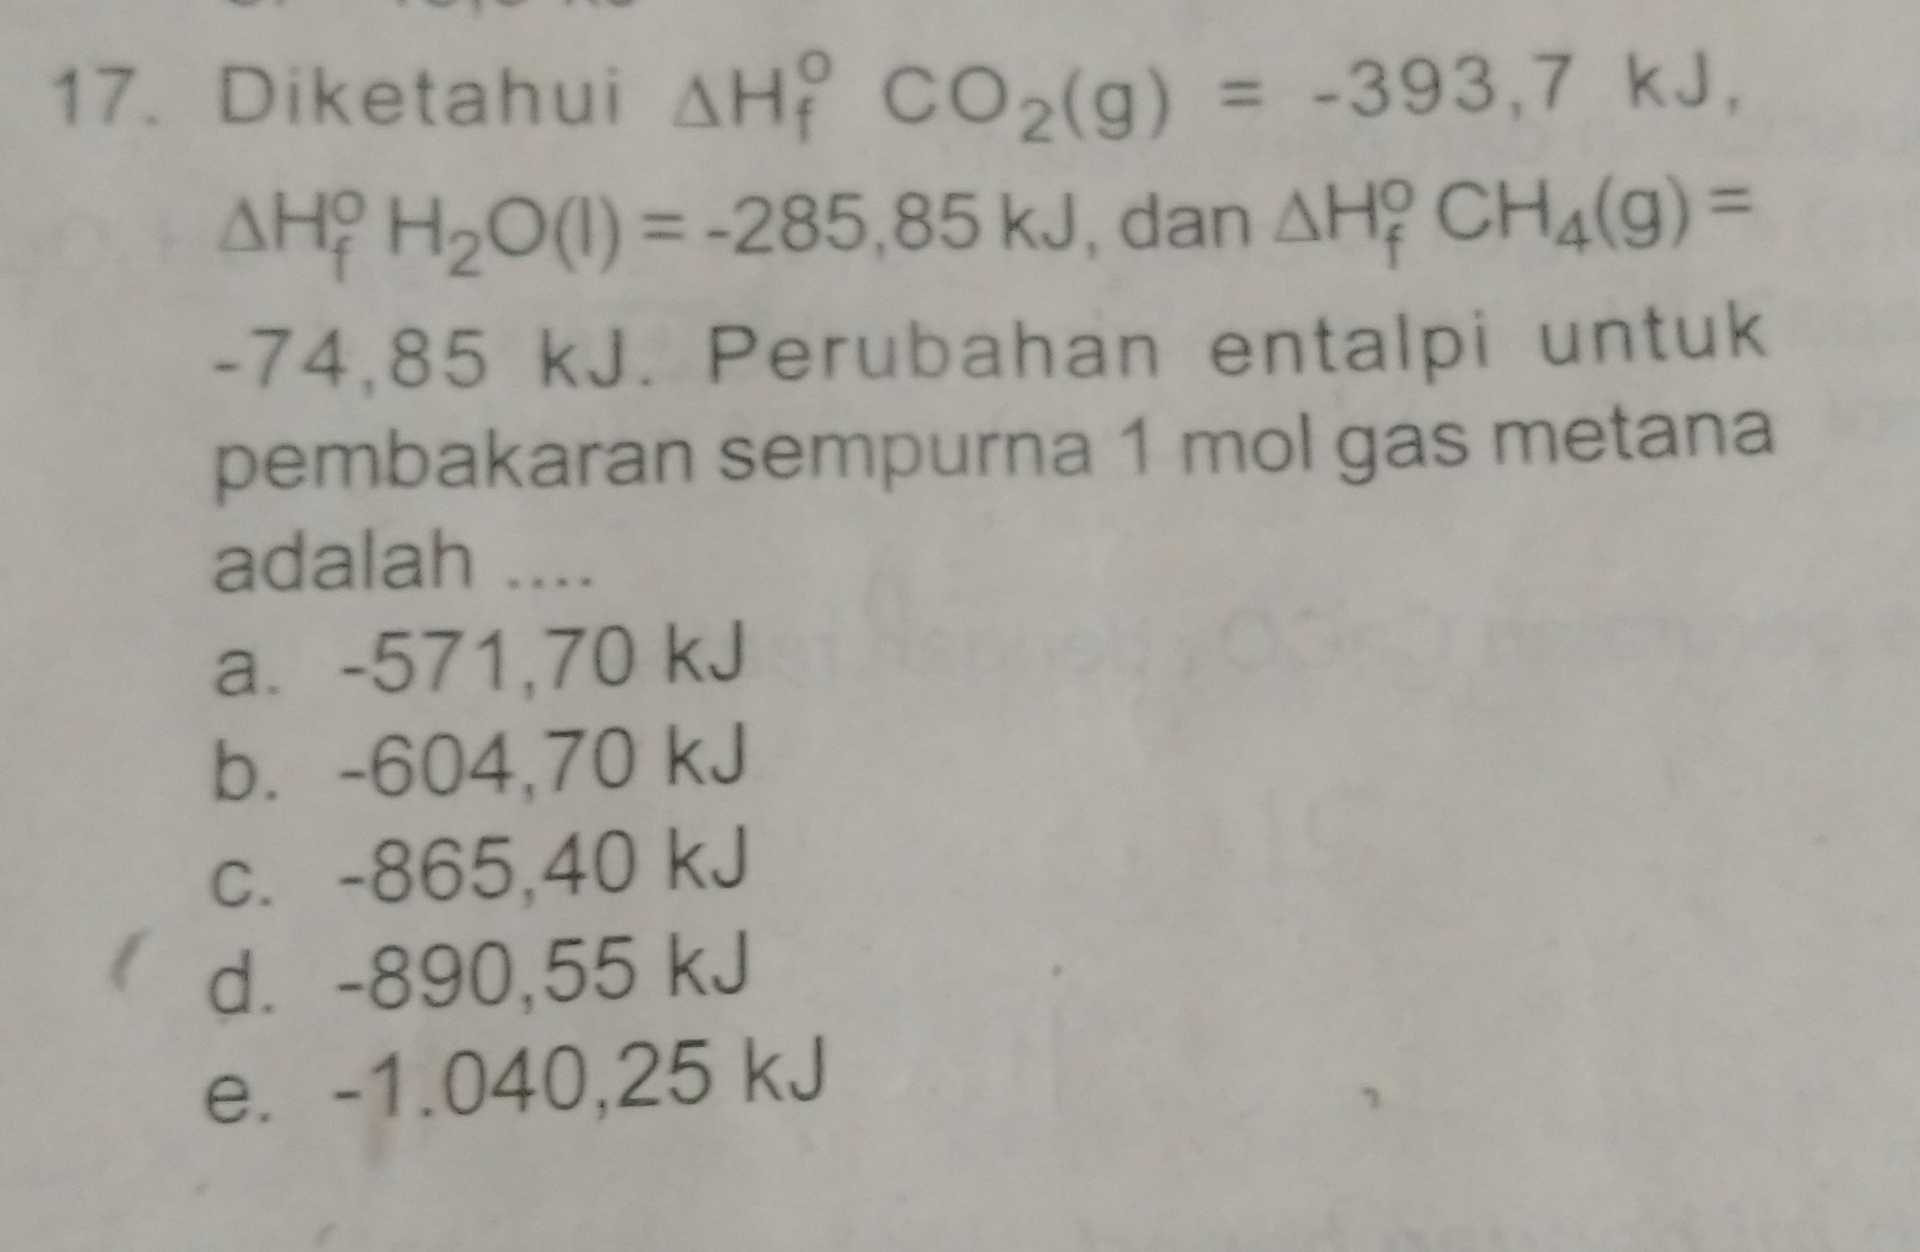 17. Diketahui AH? CO2(g) = -393,7 kJ. AHH2O(1) = -285,85 kJ, dan AHY CHA(9) = -74,85 kJ. Perubahan entalpi untuk pembakaran sempurna 1 mol gas metana adalah .... a. -571,70 kJ b. -604,70 kJ C. -865,40 kJ ( d. -890,55 kJ e. -1.040,25 kJ 